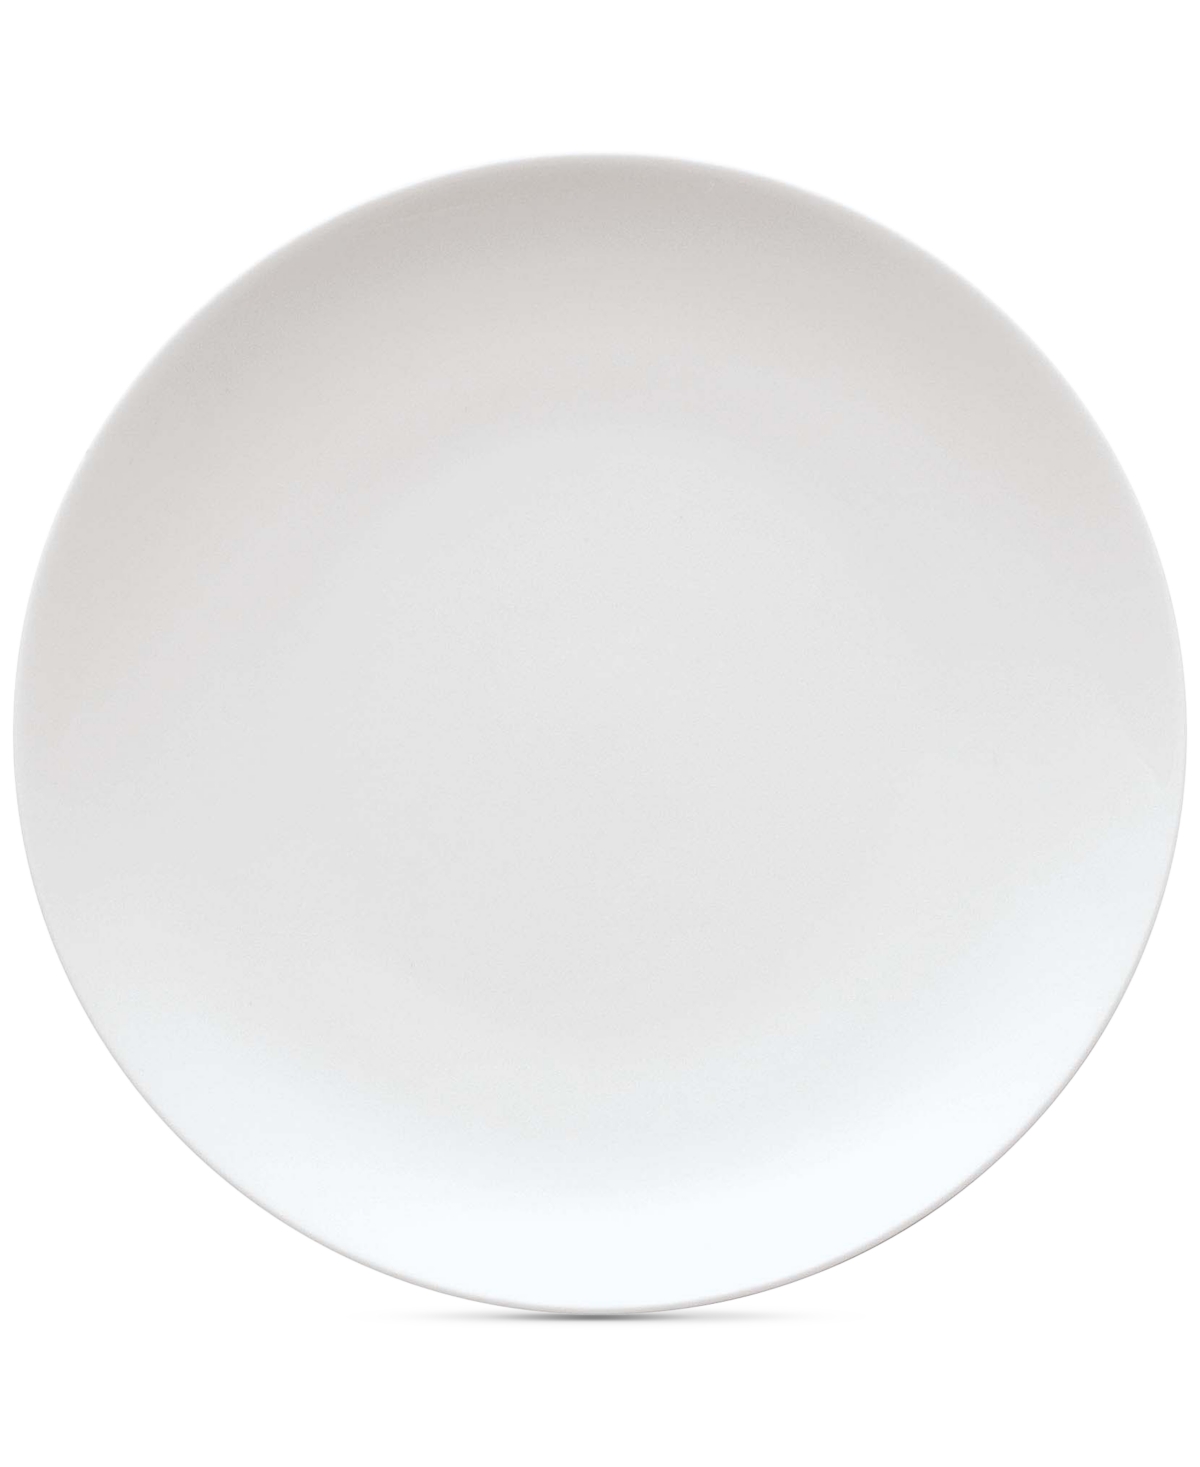 Medaillon Porcelain Bread & Butter Plate - White